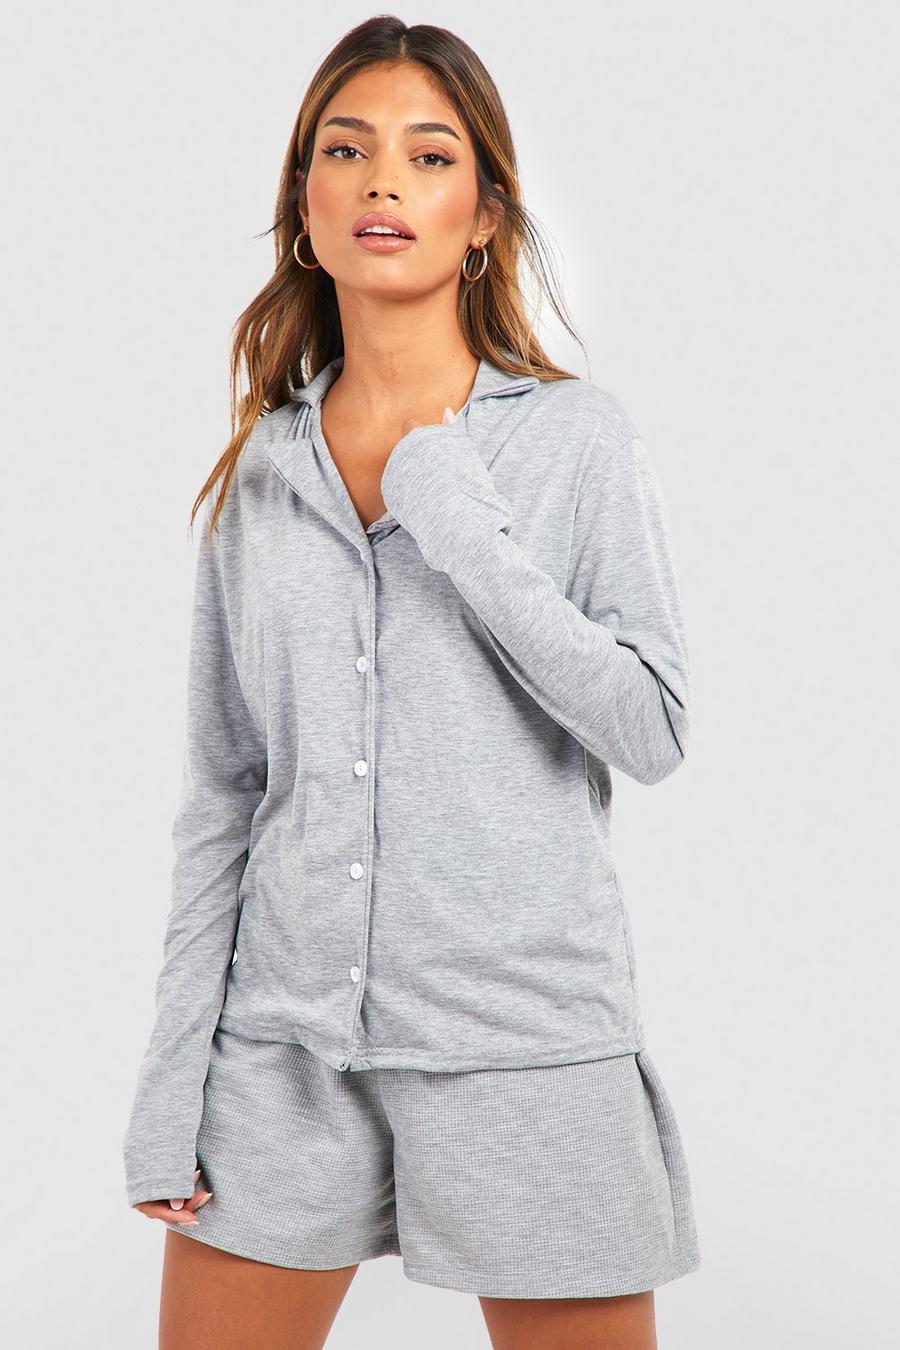 Grey marl Långärmad pyjamasskjorta i jersey med knappar